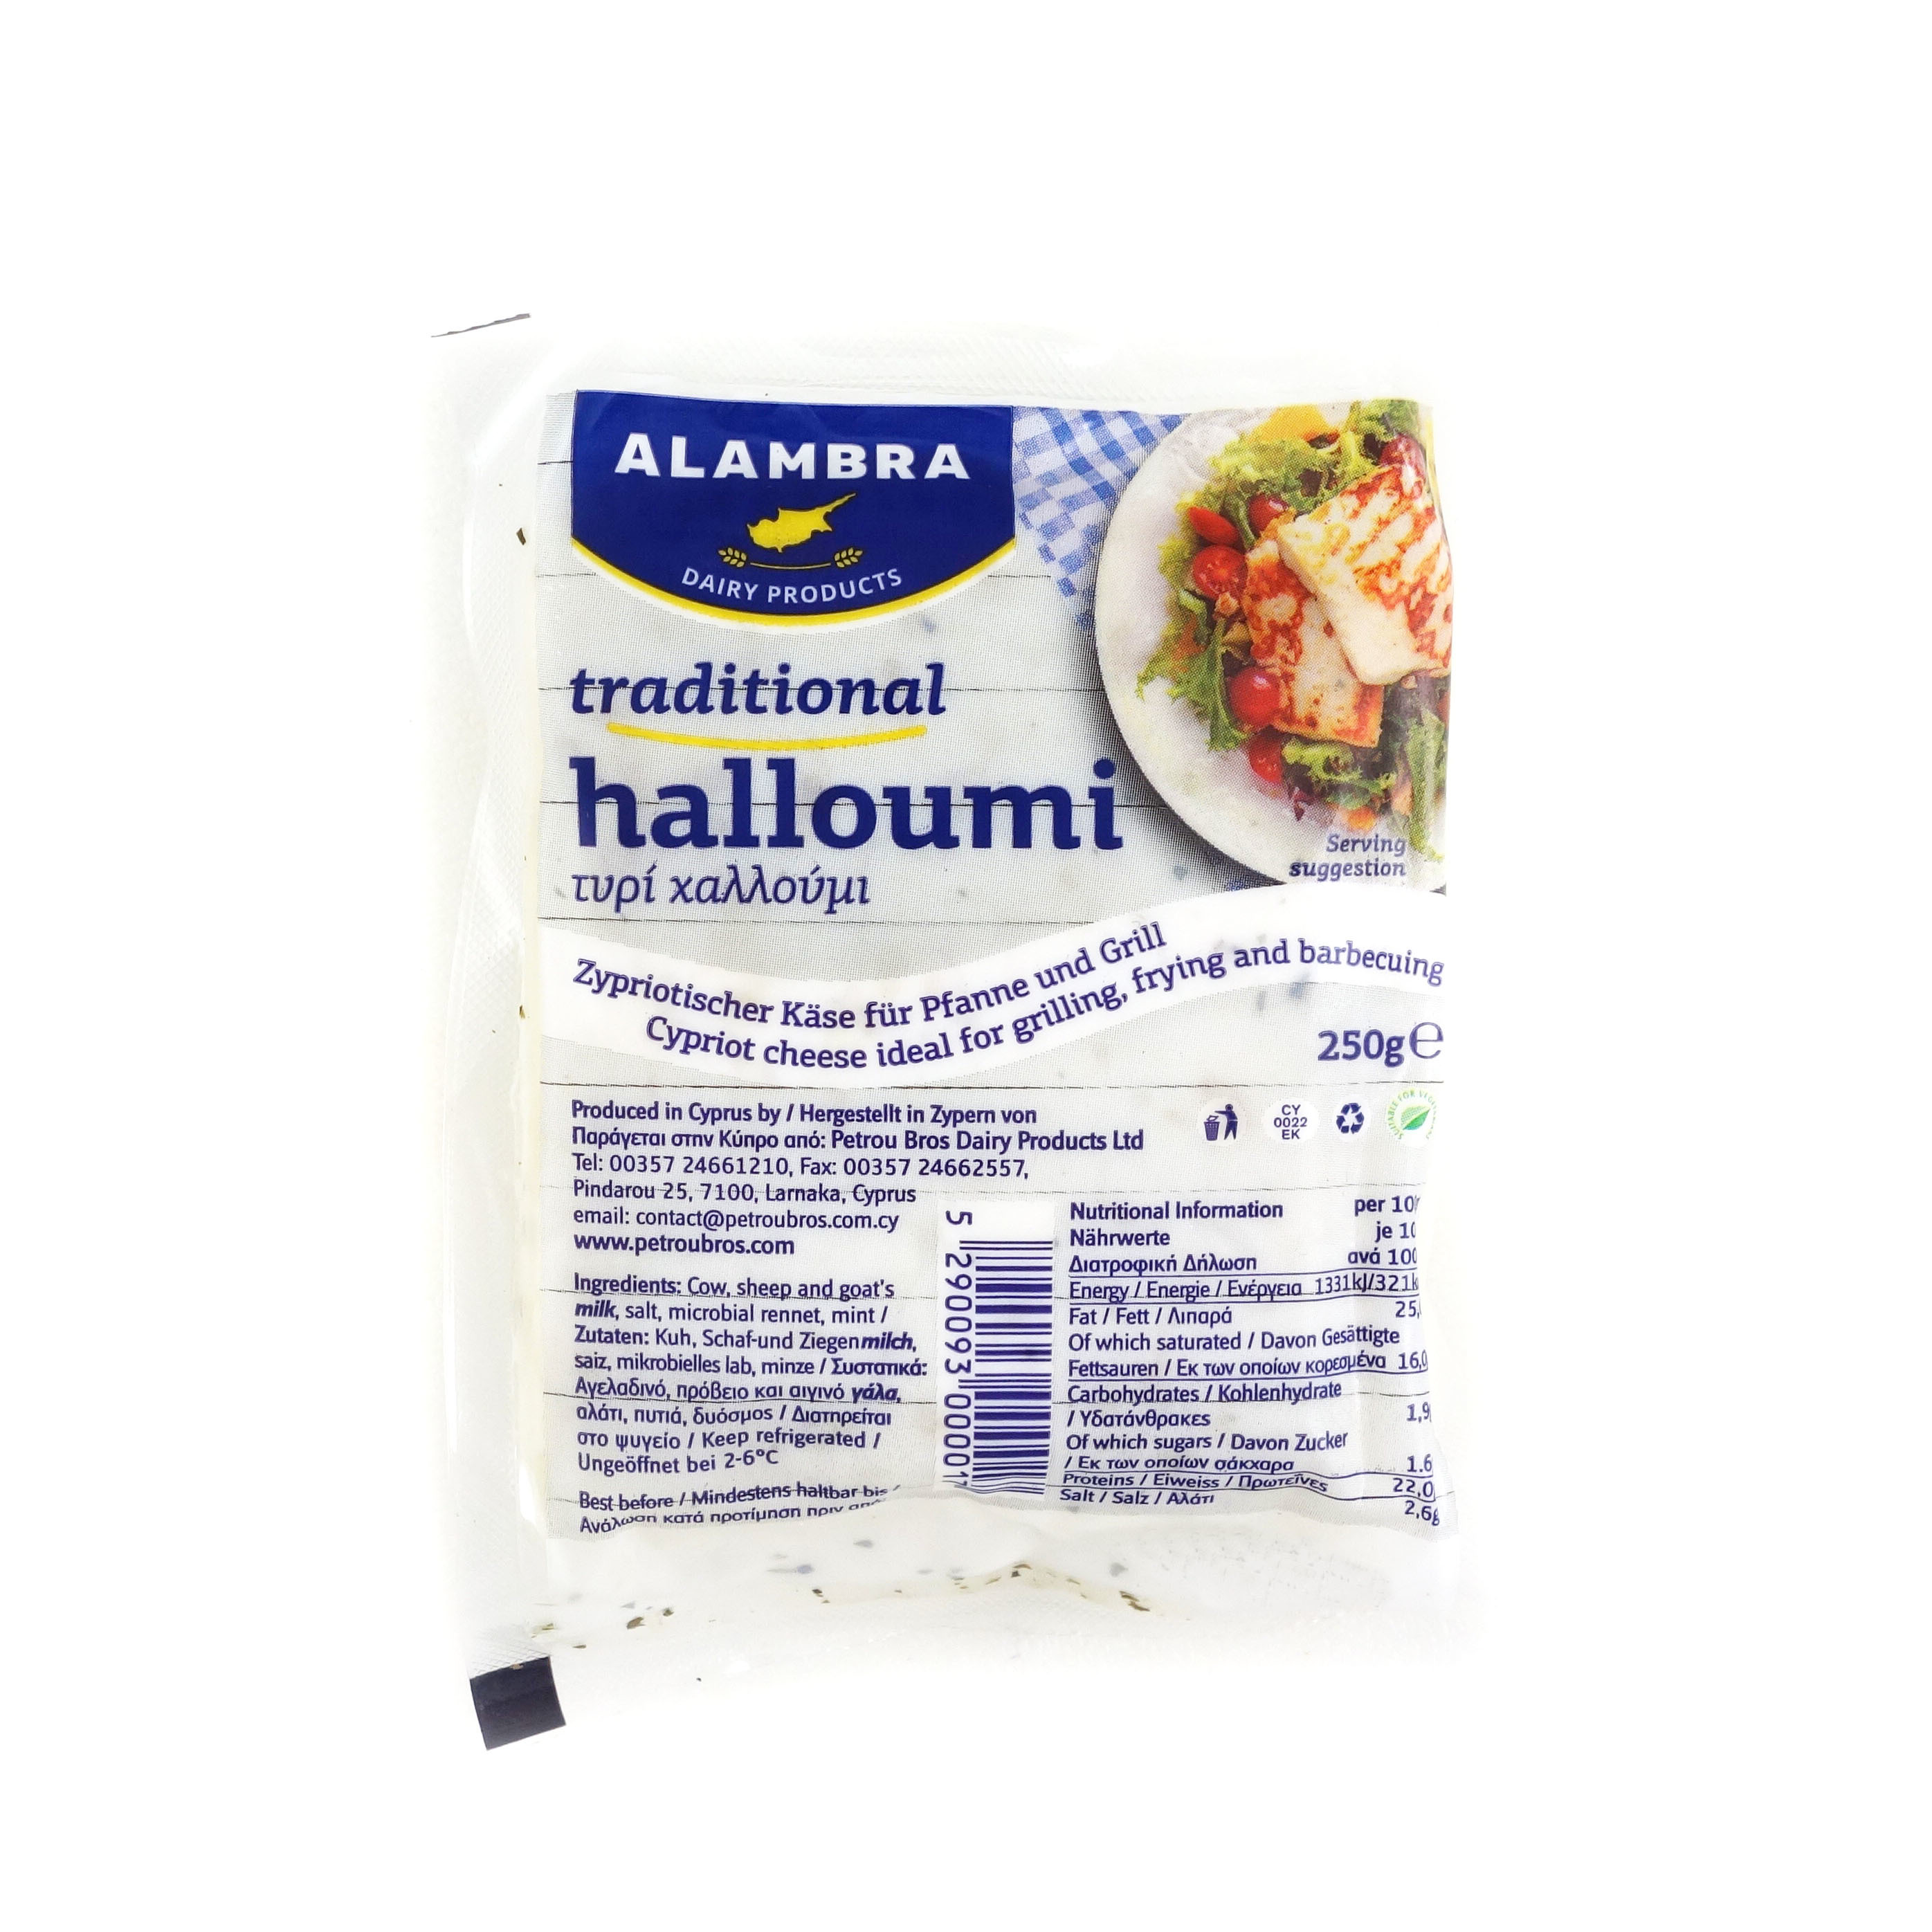 塞浦路斯Alambra哈羅米芝士(Halloumi Cheese)*